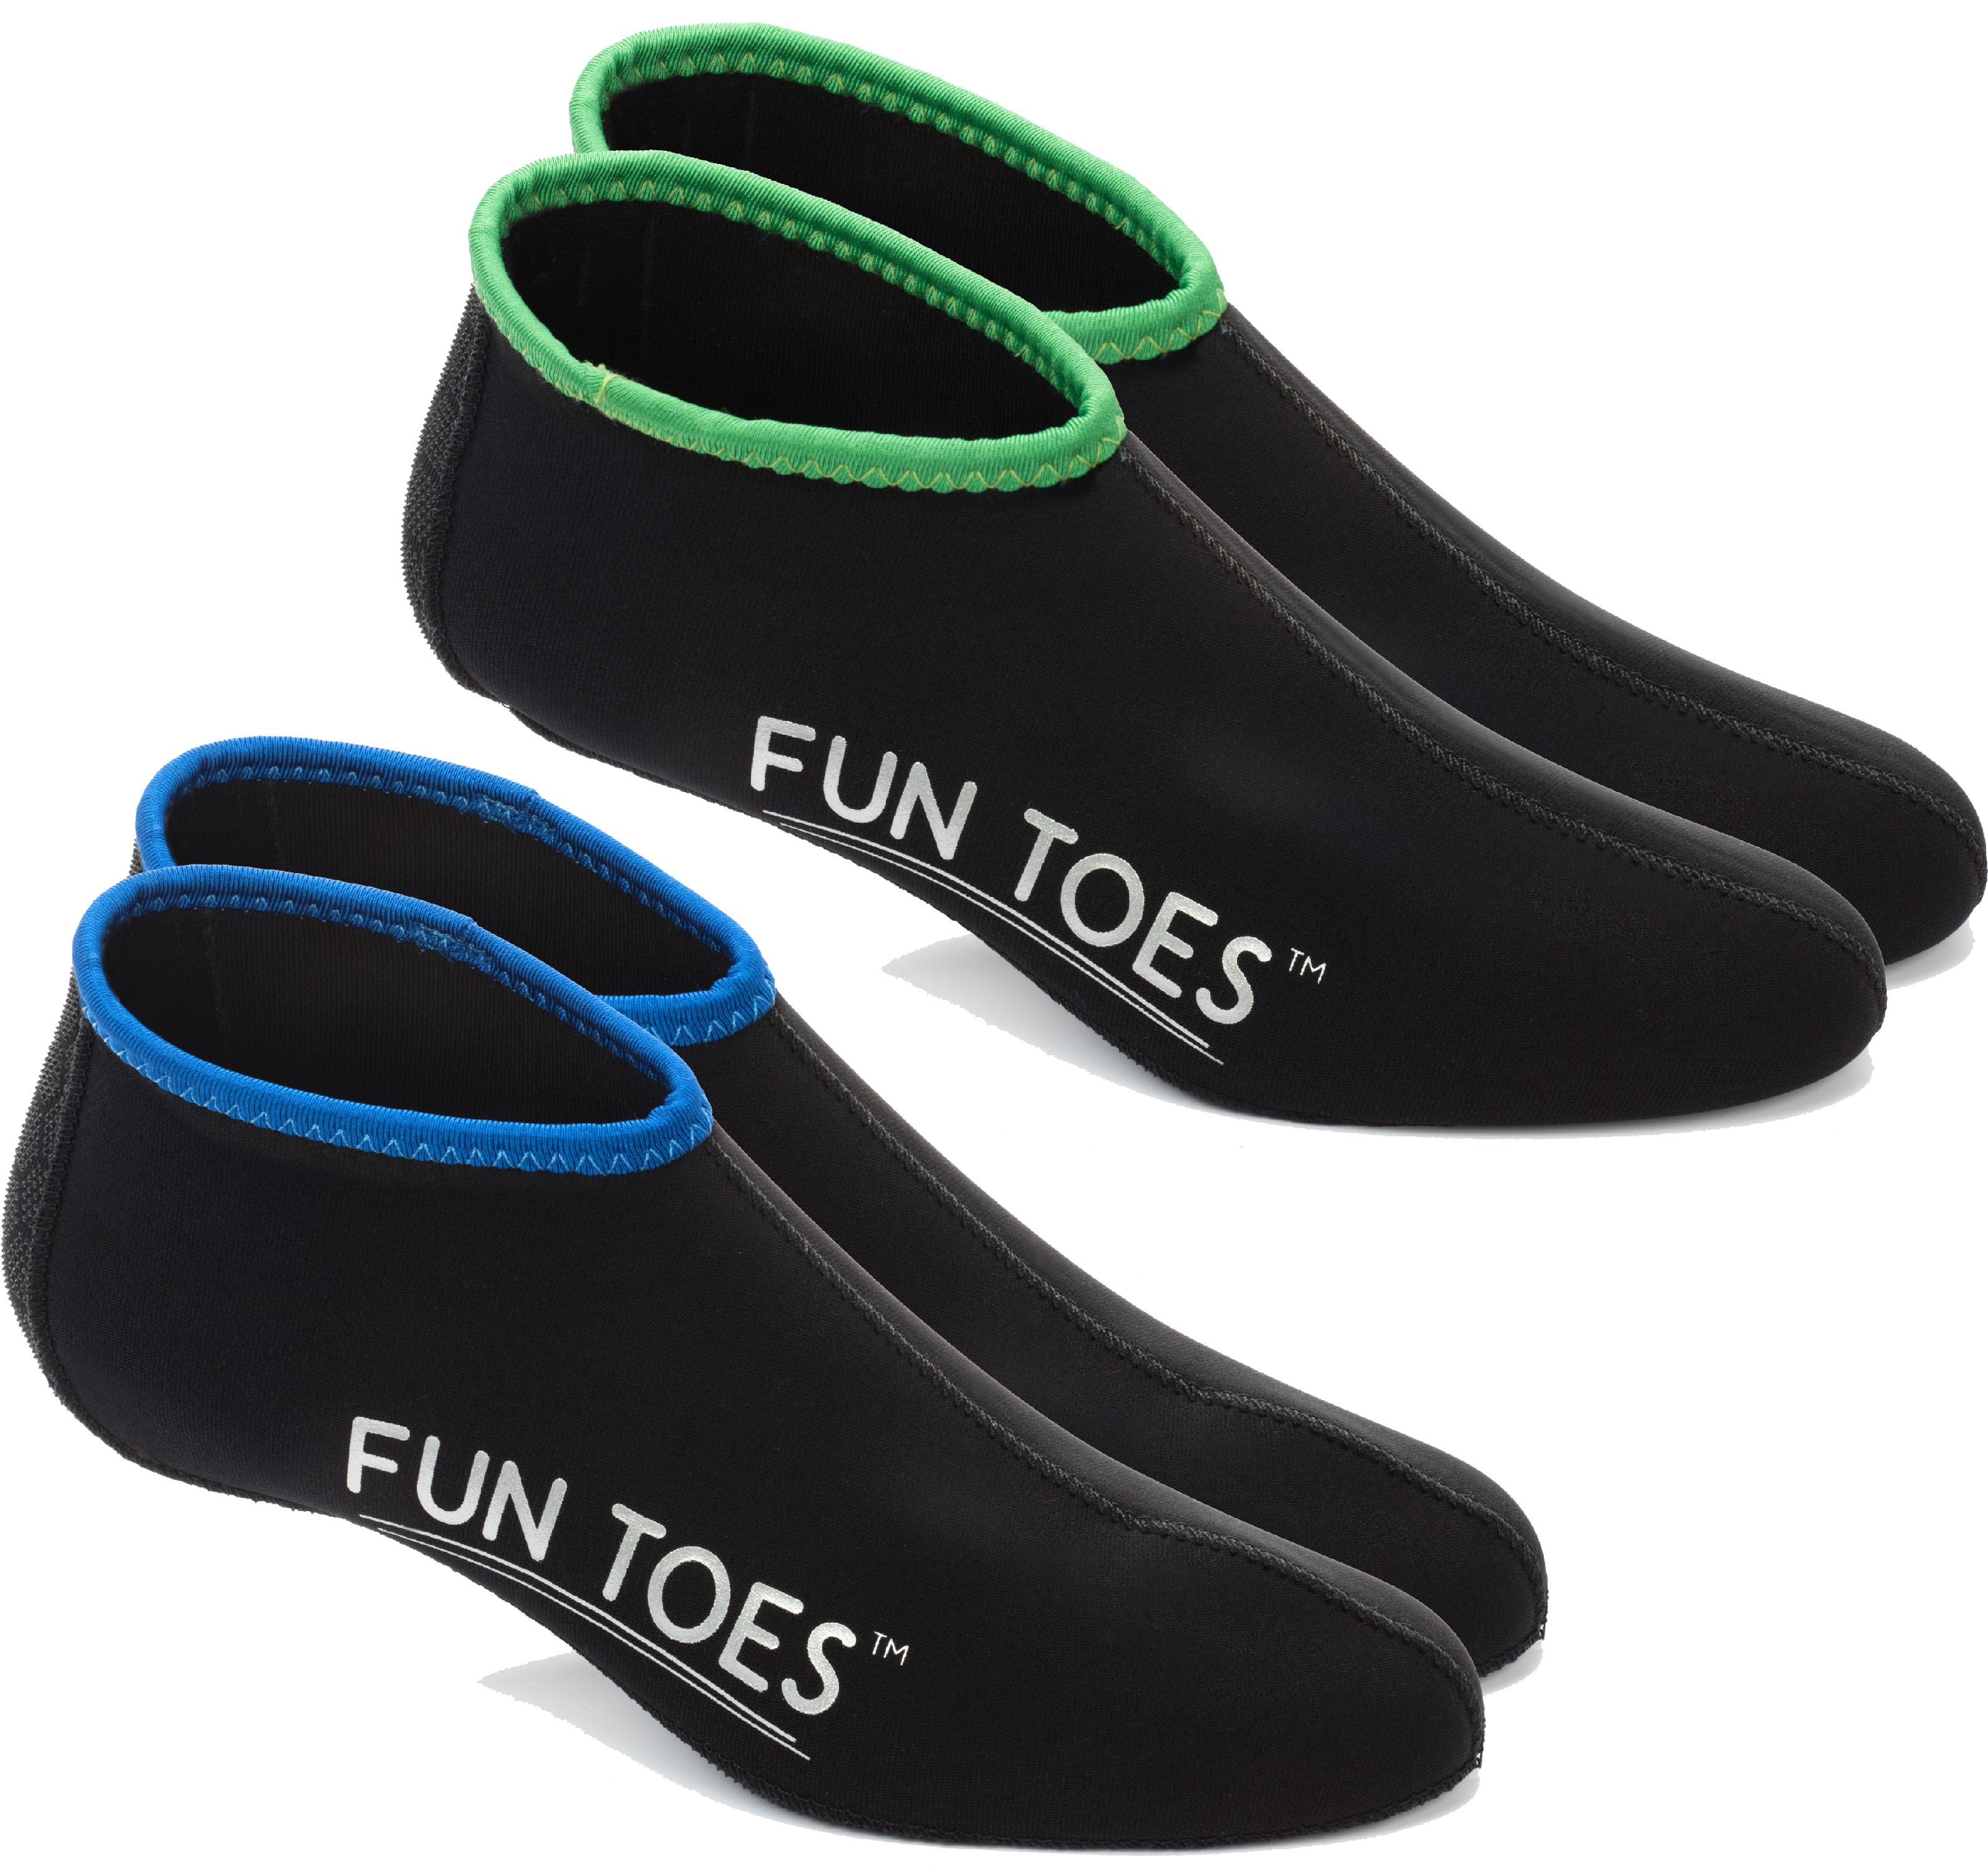 RZJZGZ 3mm Neoprene Water Socks for Women Men Anti-Slip Water Shoes Thermal Wetsuit Socks Water Sports Snorkeling Fins Socks 